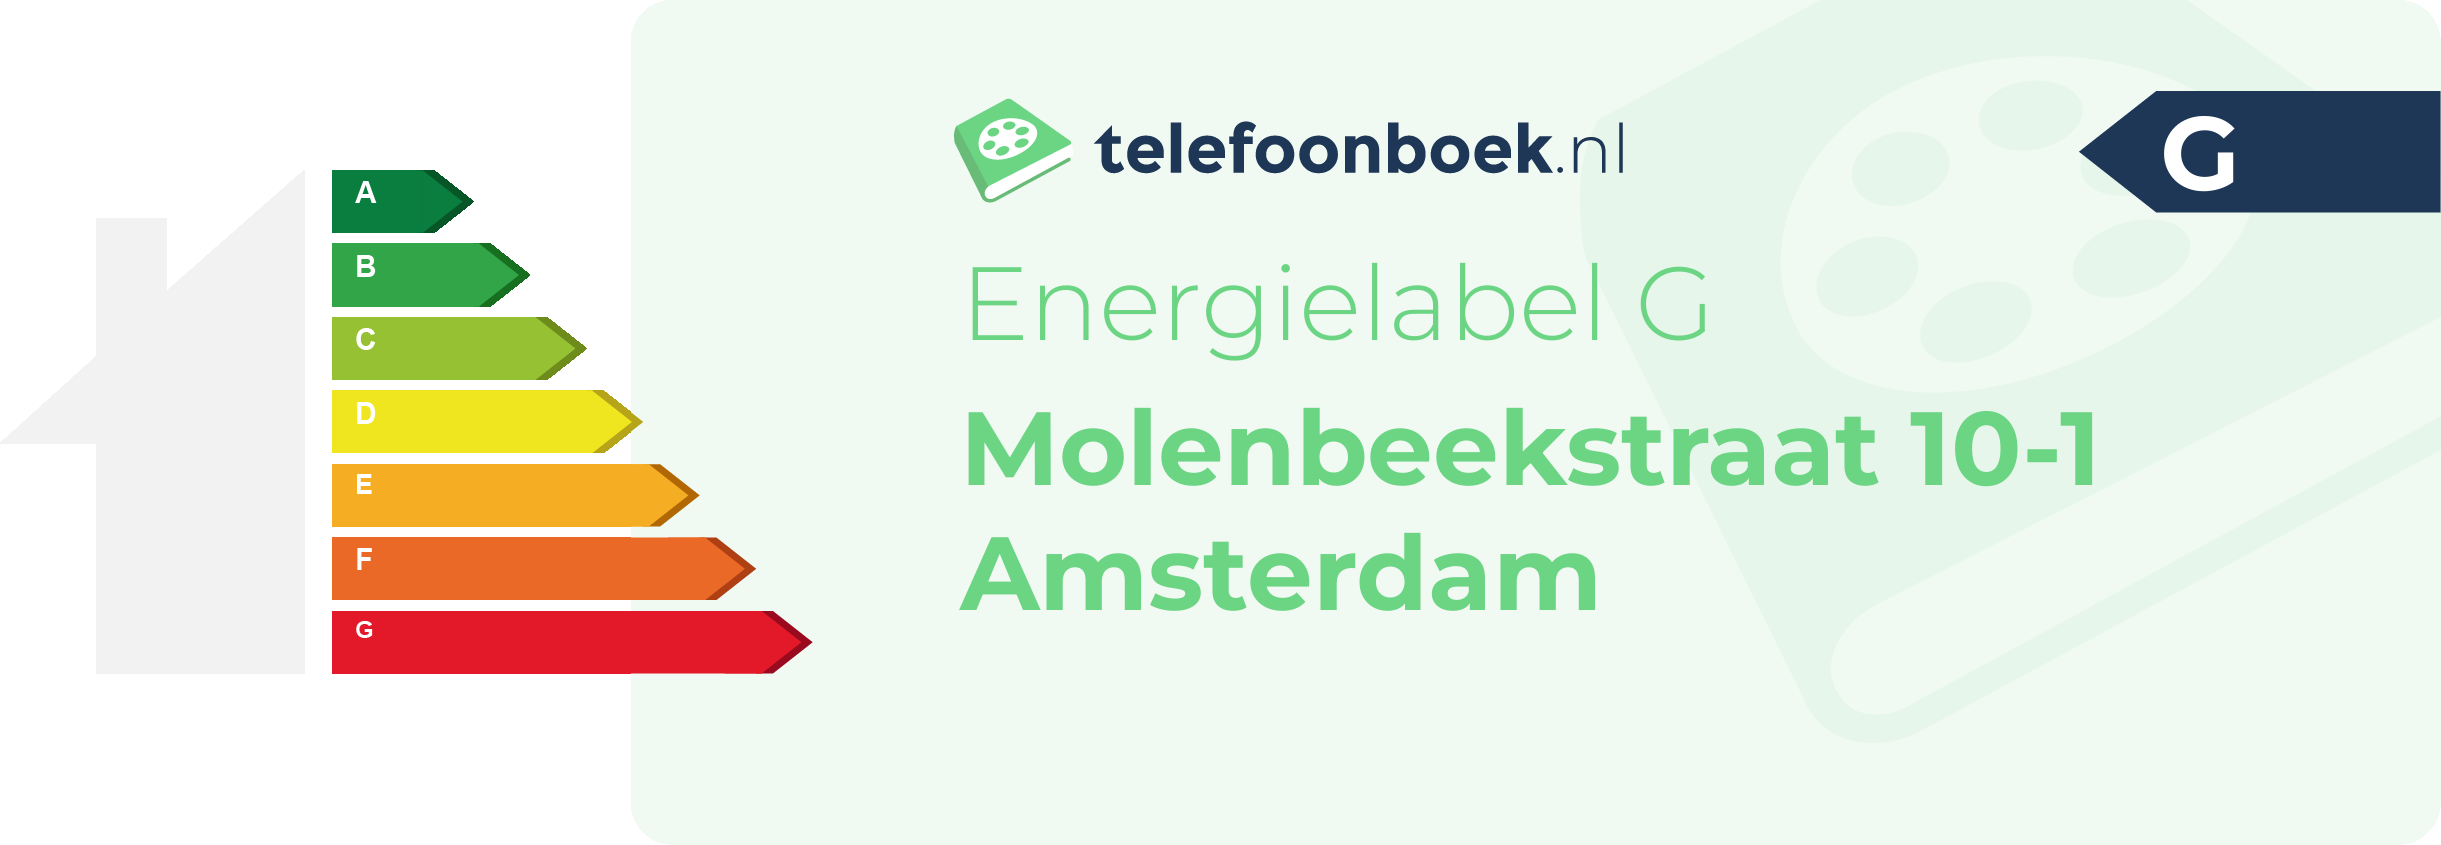 Energielabel Molenbeekstraat 10-1 Amsterdam